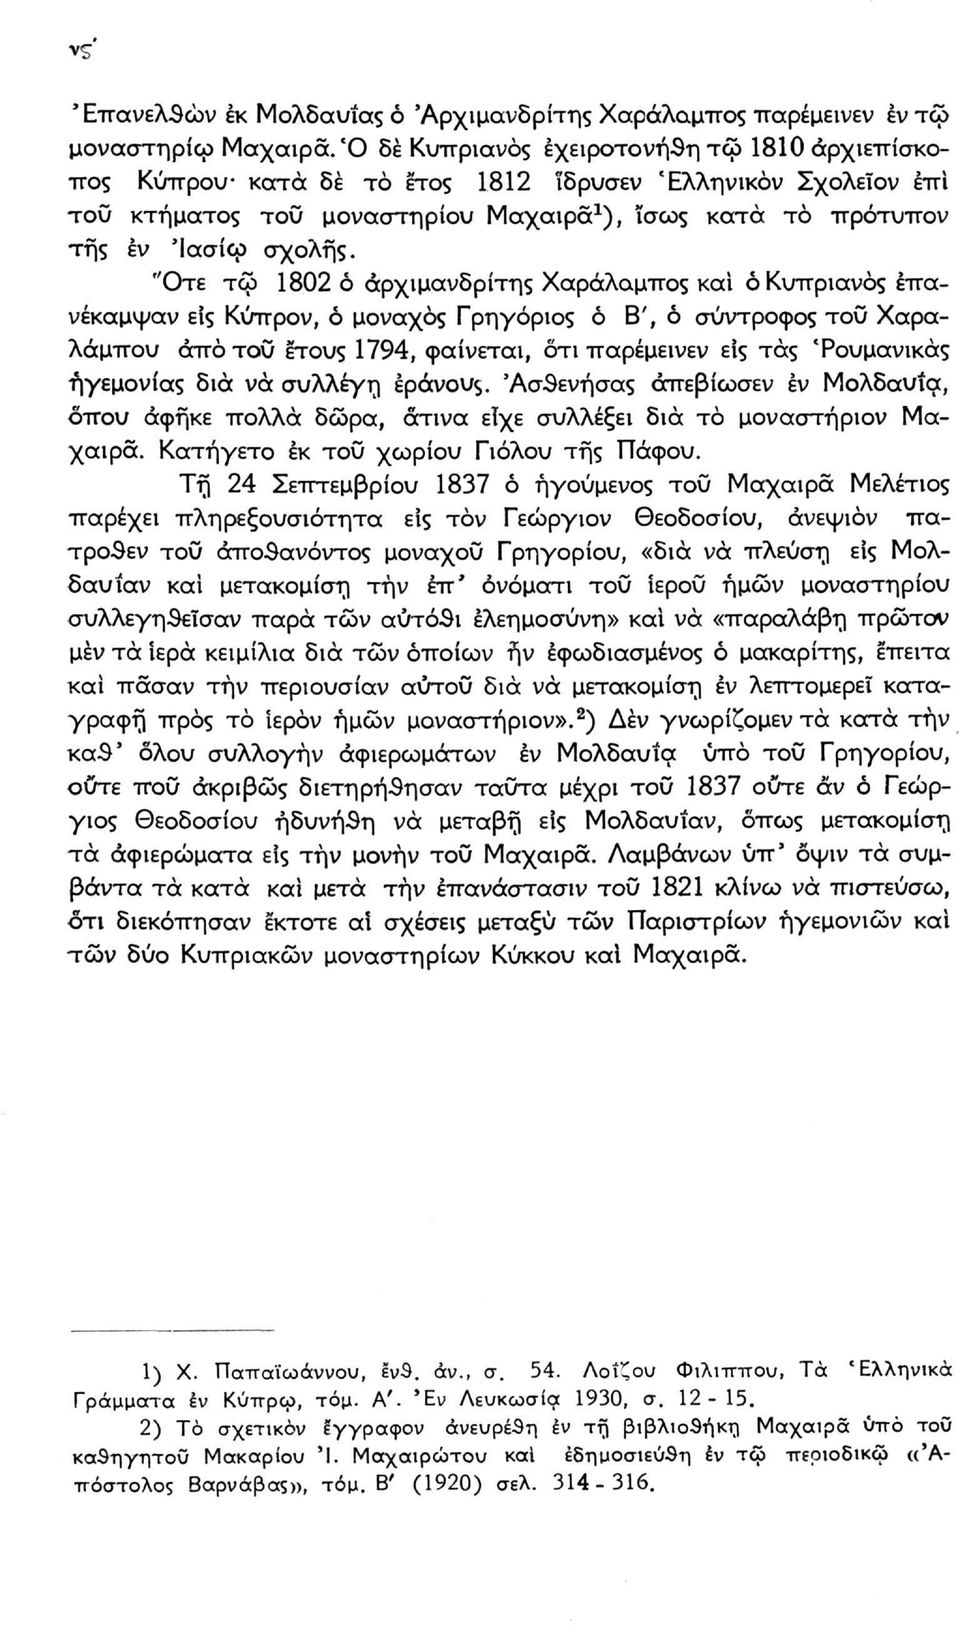 "Οτε τφ 1802 ό αρχιμανδρίτης Χαράλαμπος και ό Κυπριανός επανέκαμψαν είς Κύπρον, ό μοναχός Γρηγόριος ό Β', ό σύντροφος του Χαραλάμπου άπό του έτους 1794, φαίνεται, ότι παρέμεινεν είς τάς Τουμανικάς